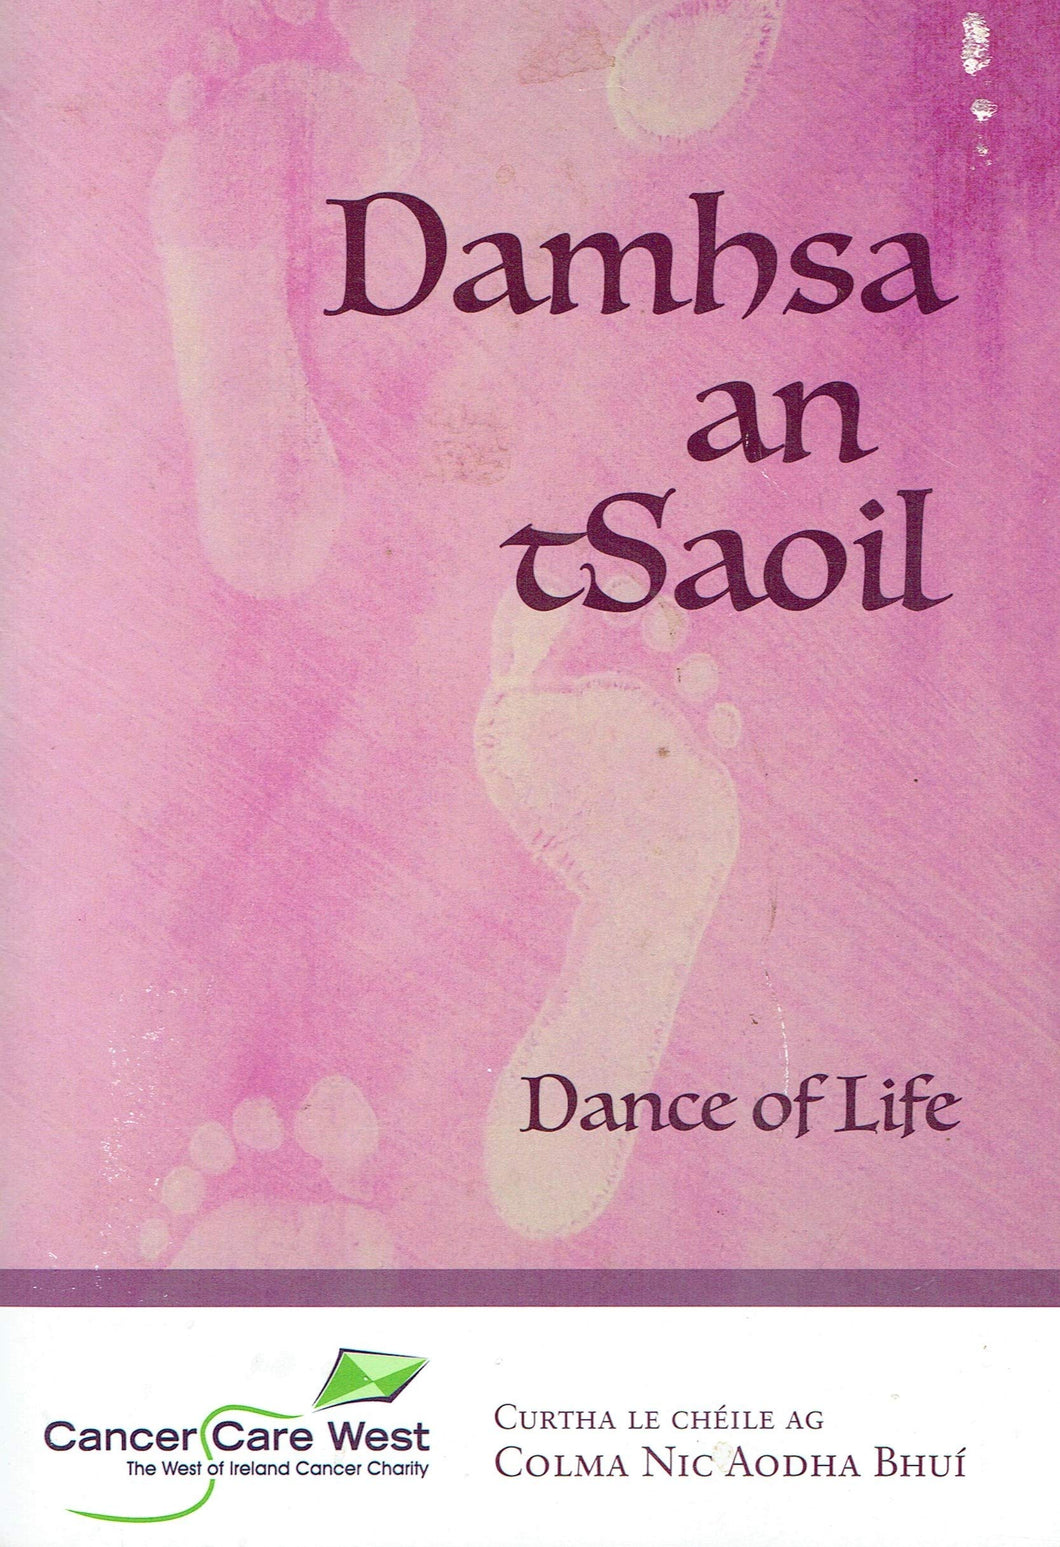 Damhsa an tSaoil - Dance of Life